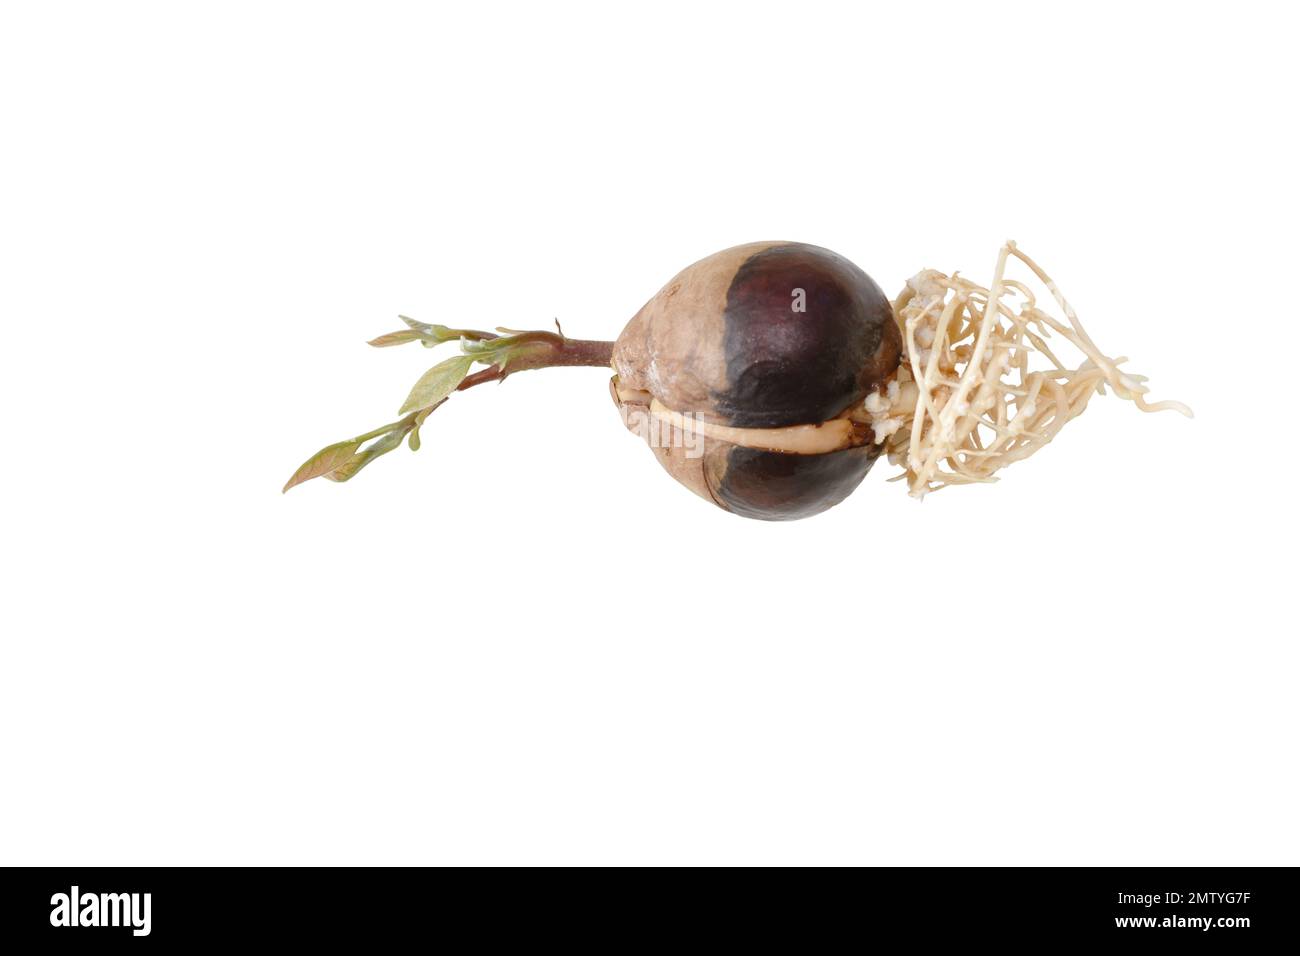 Germoglio di semi di avocado con radici e foglie giovani isolate su fondo bianco Foto Stock